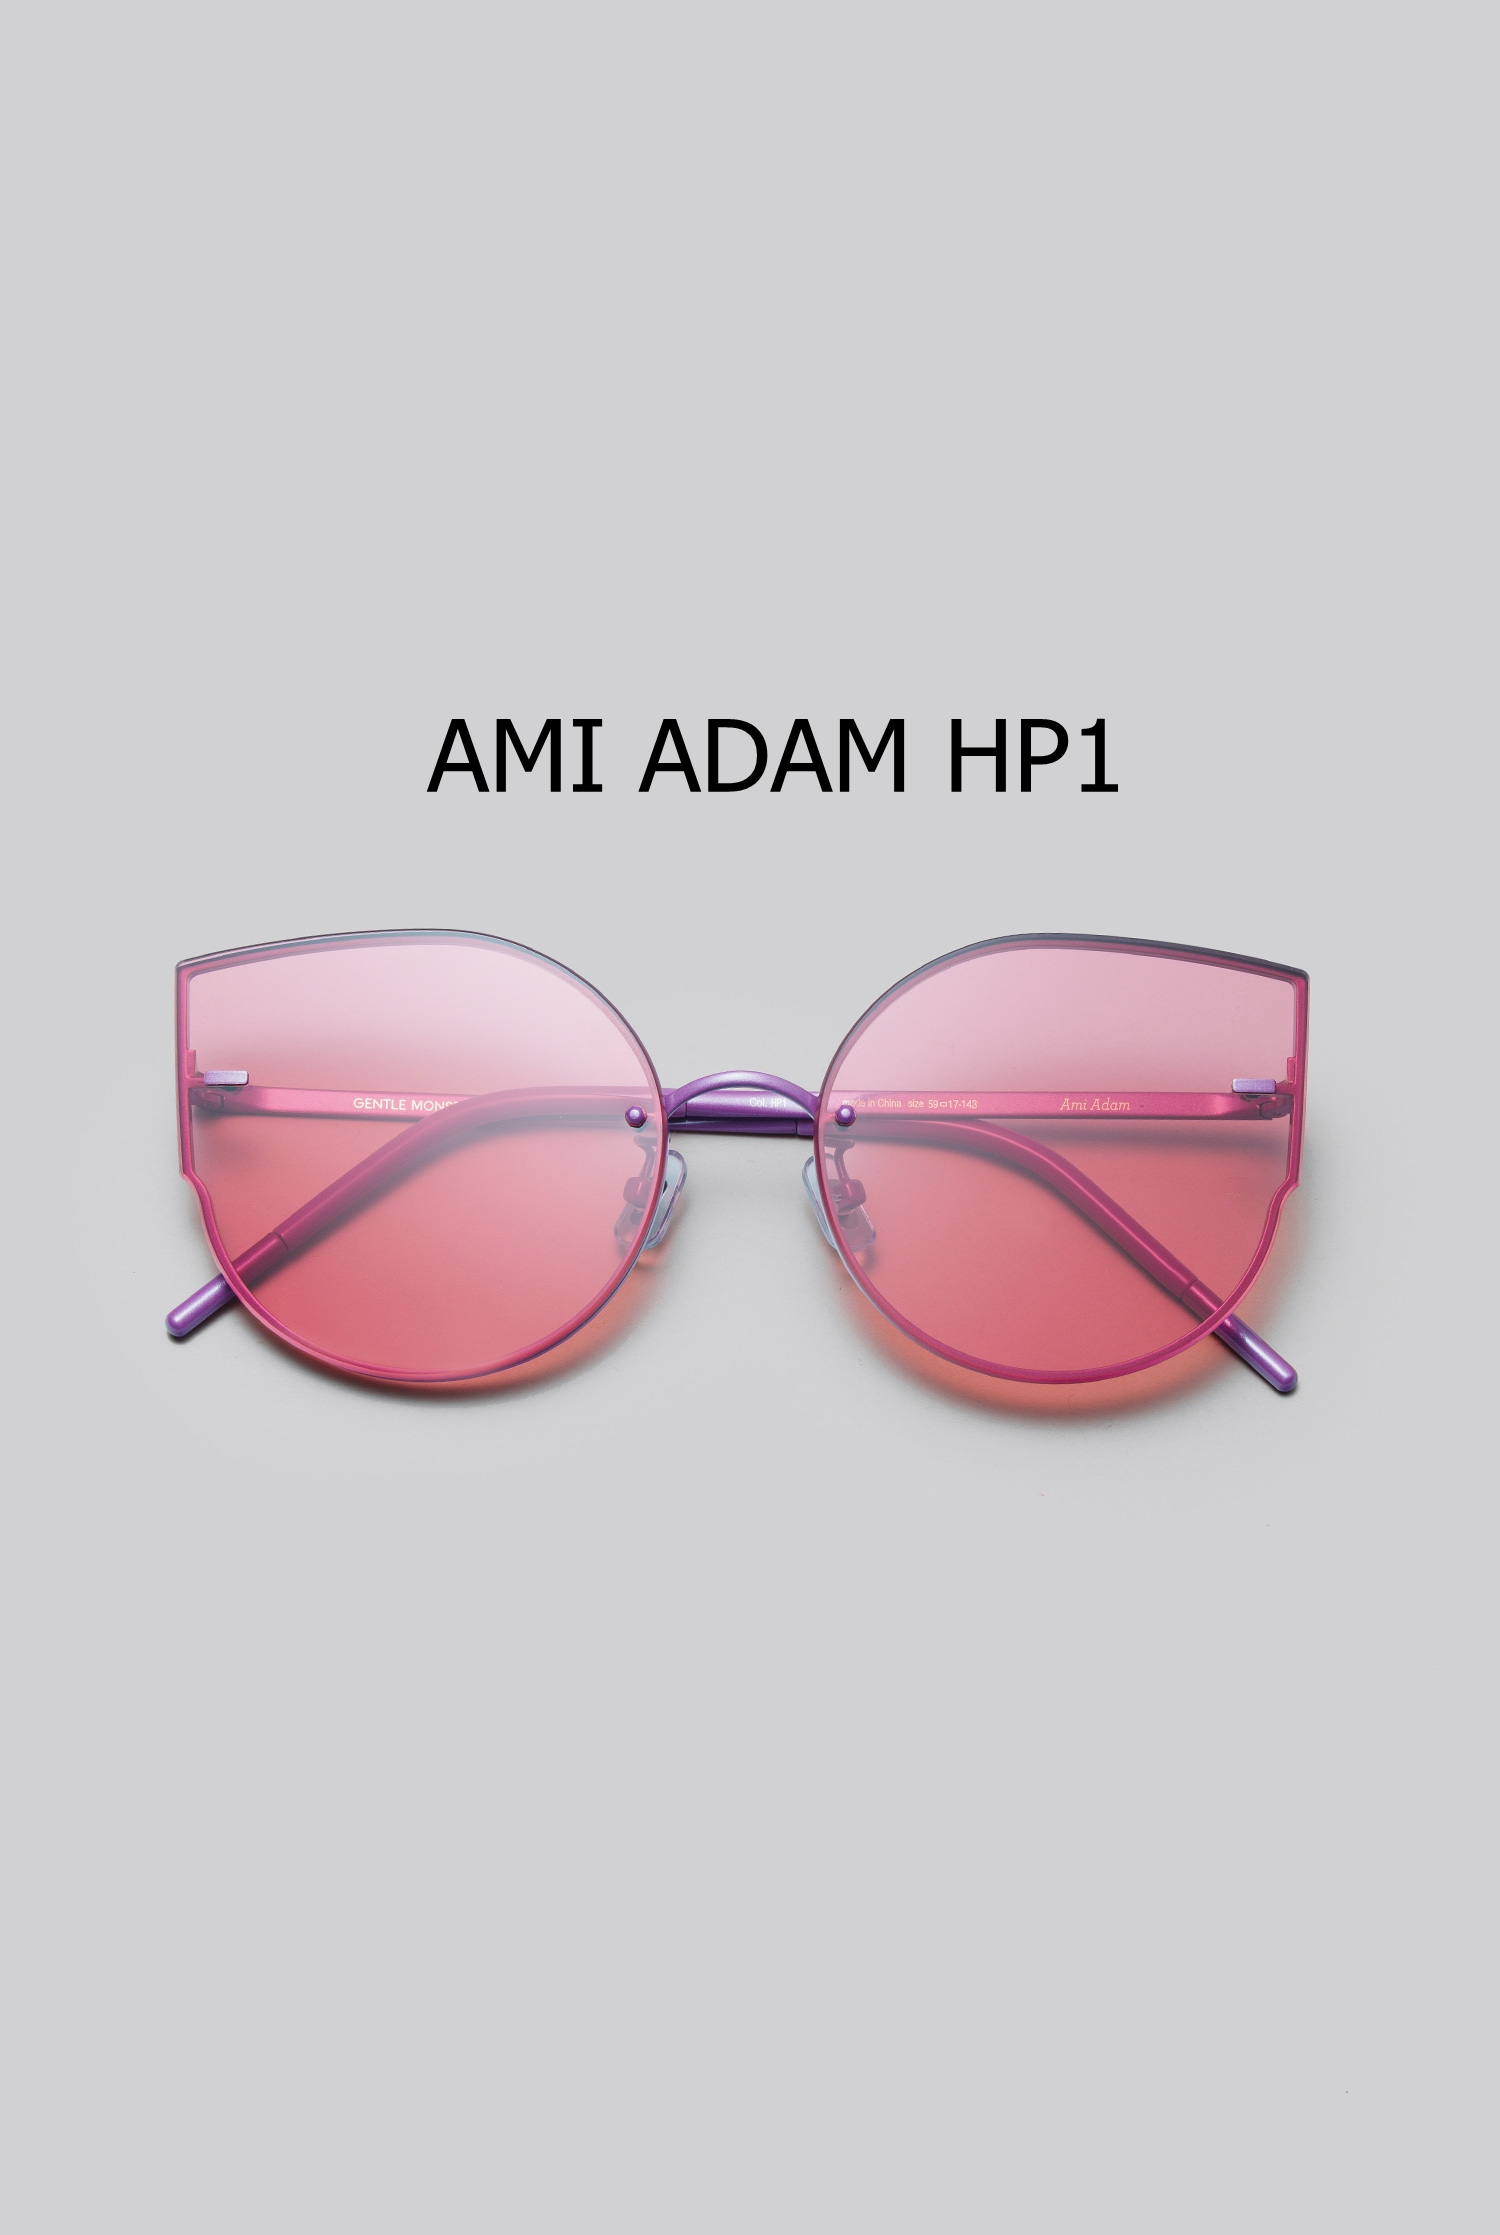 AMI ADAM HP1